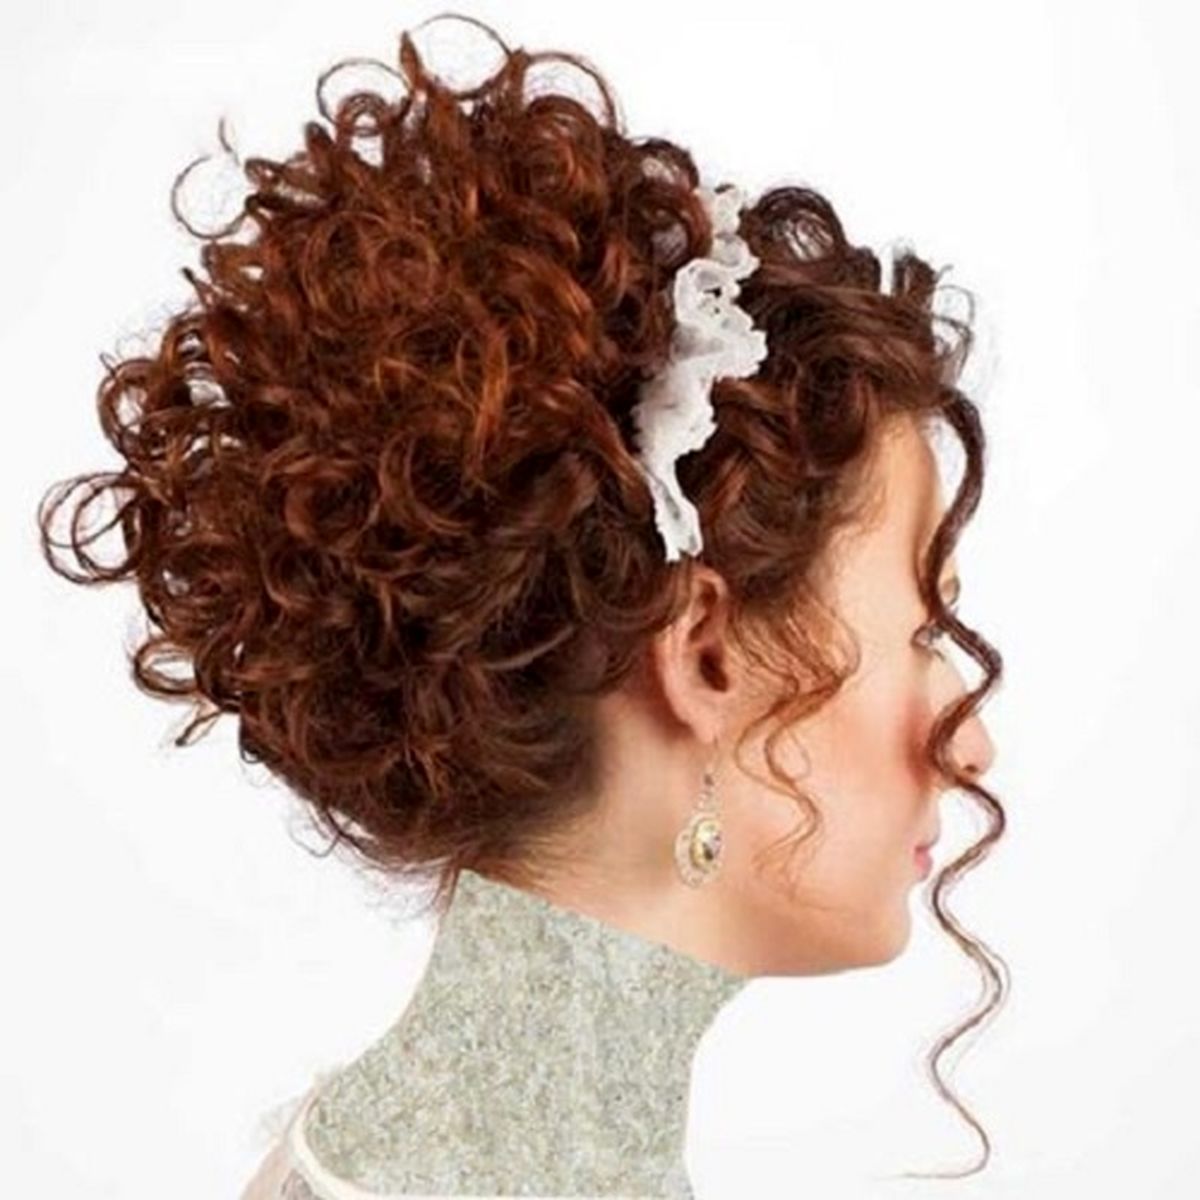 شیک ترین مدل موی دخترانه پاییزه + تصاویر